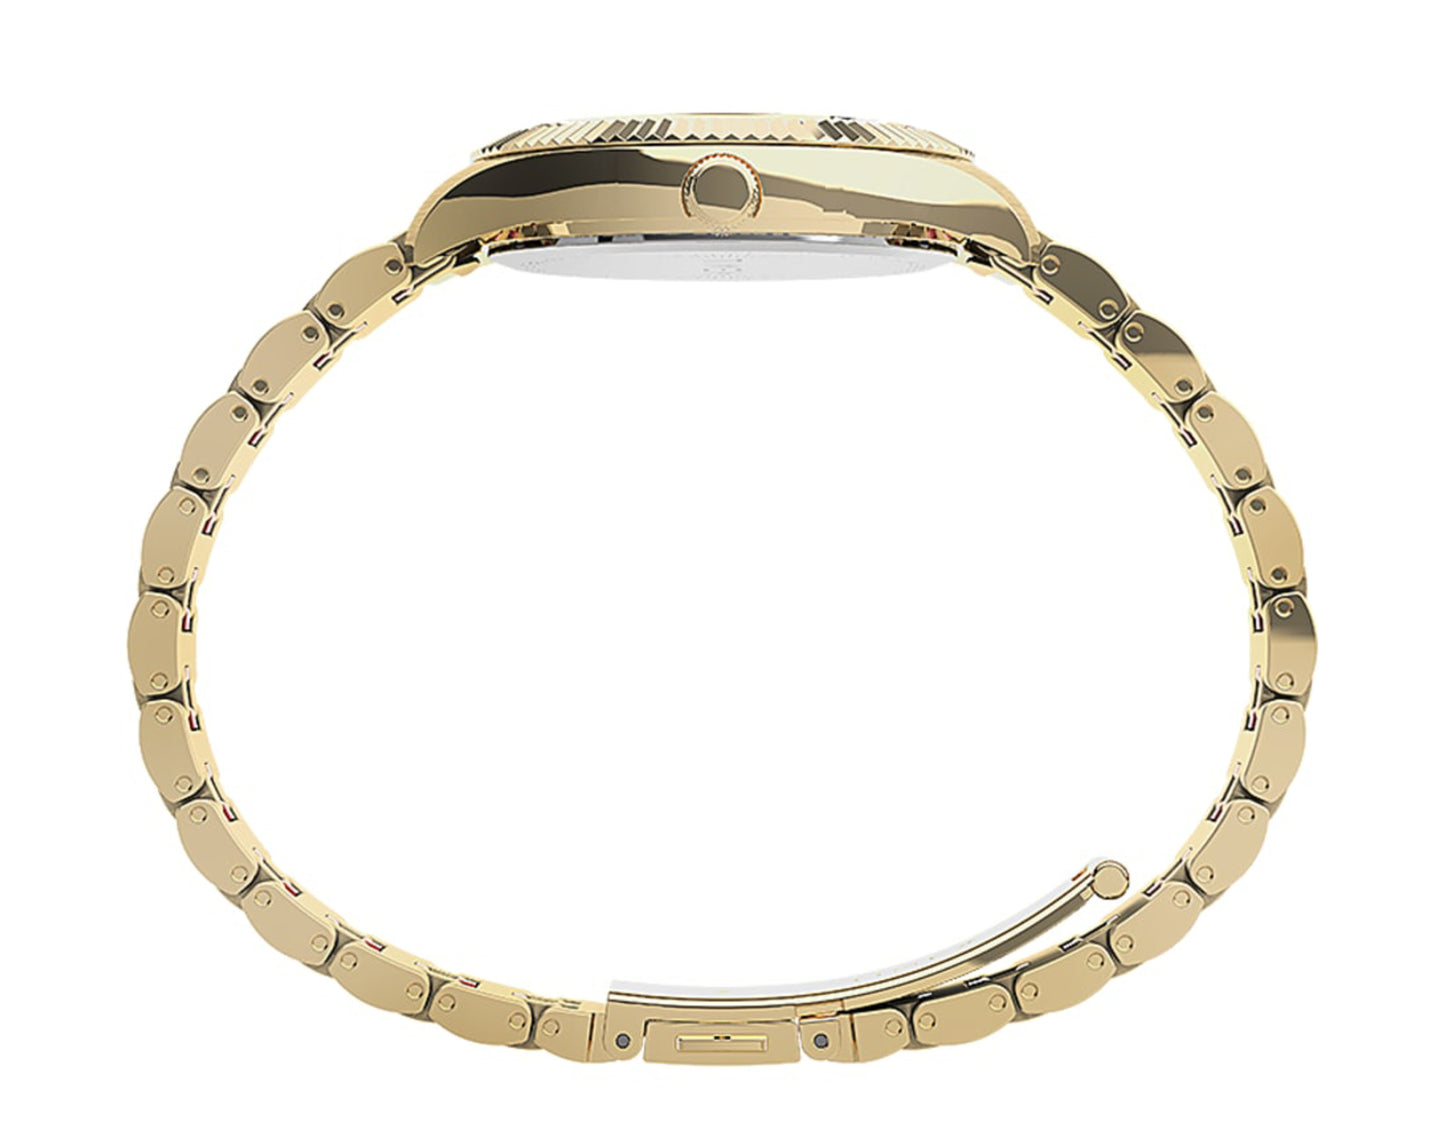 Timex Waterbury Legacy Boyfriend Malibu 36mm Stainless Steel Bracelet Watch